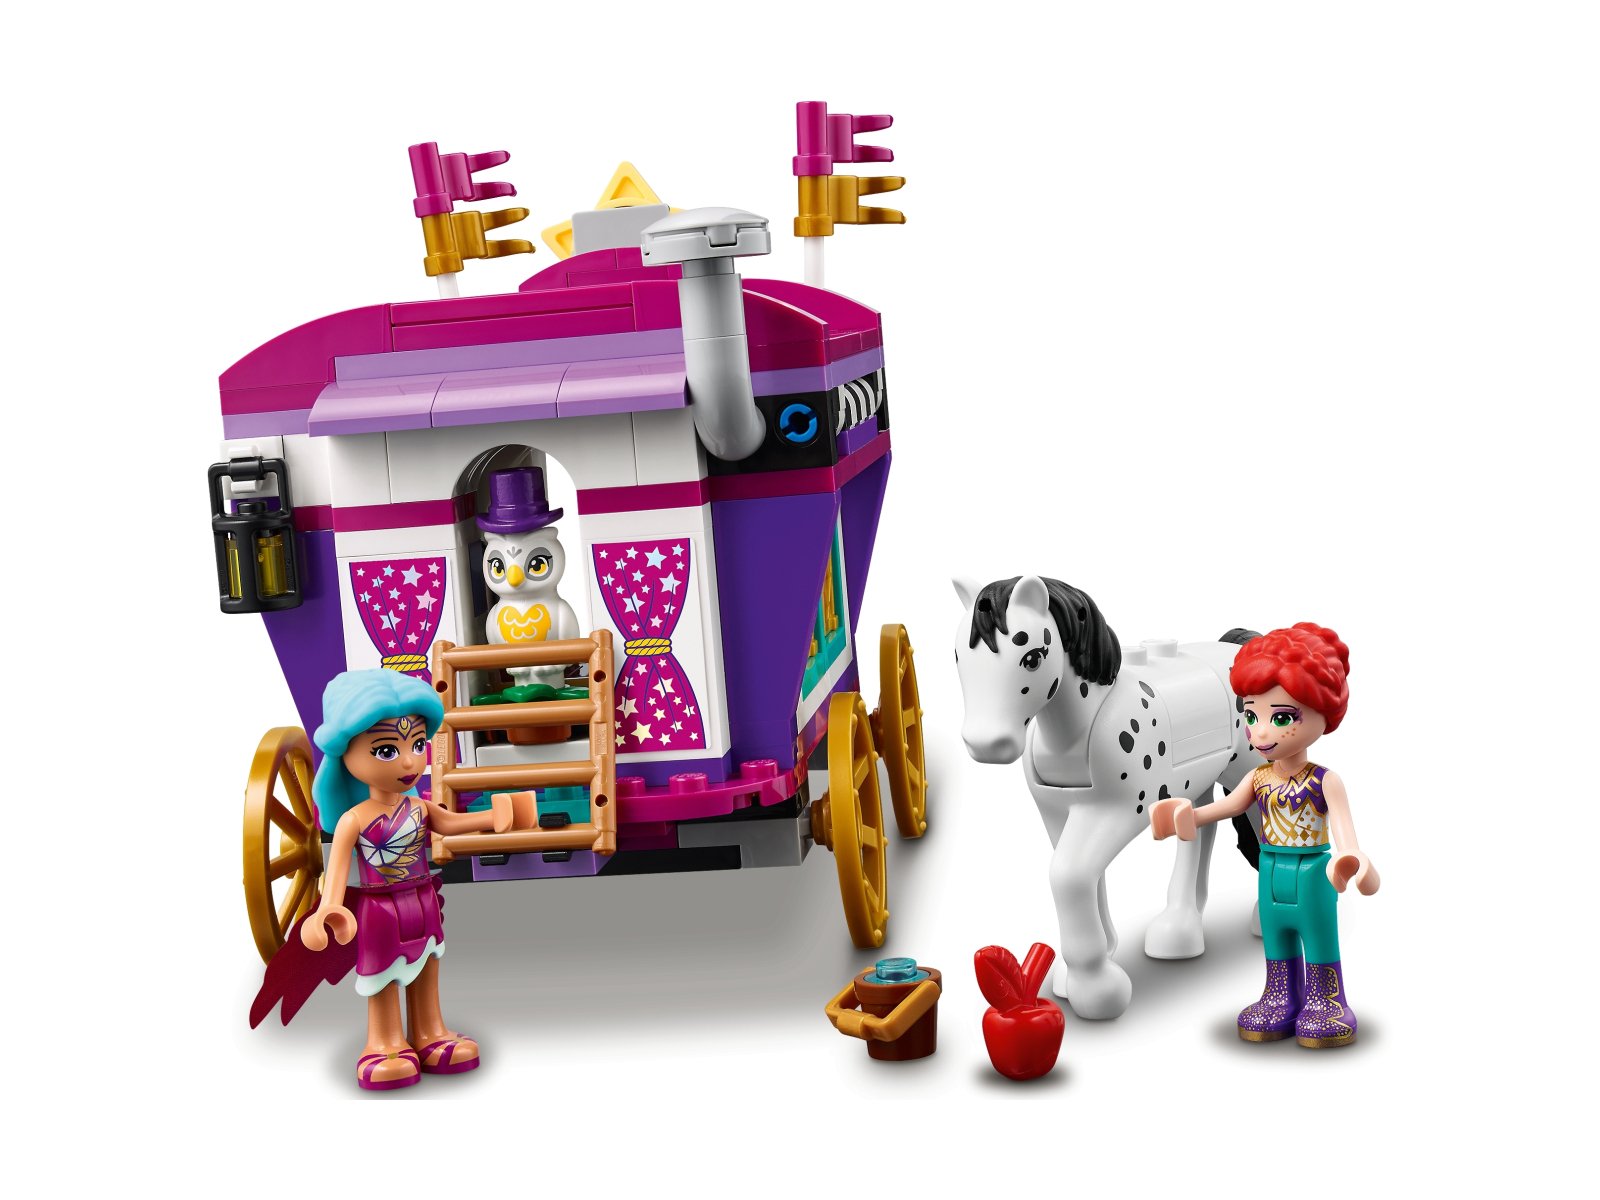 LEGO Friends Magiczny wóz 41688